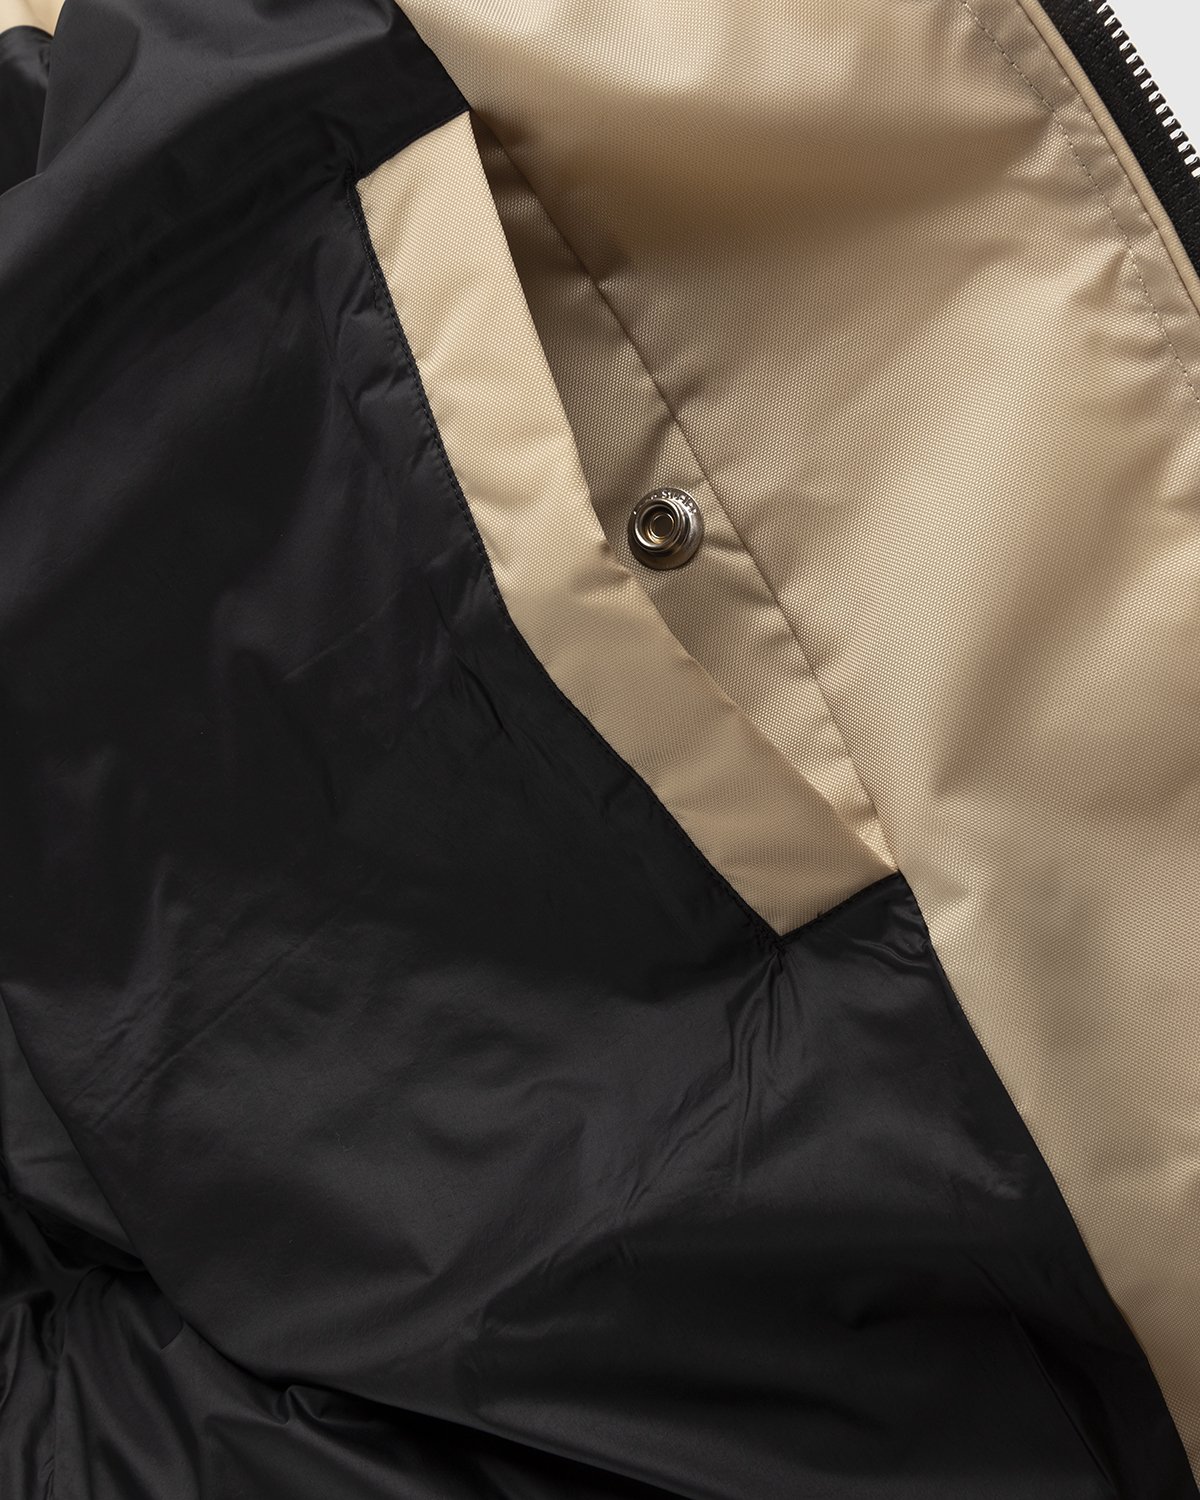 Acne Studios - Puffer Jacket Black - Clothing - Black - Image 7